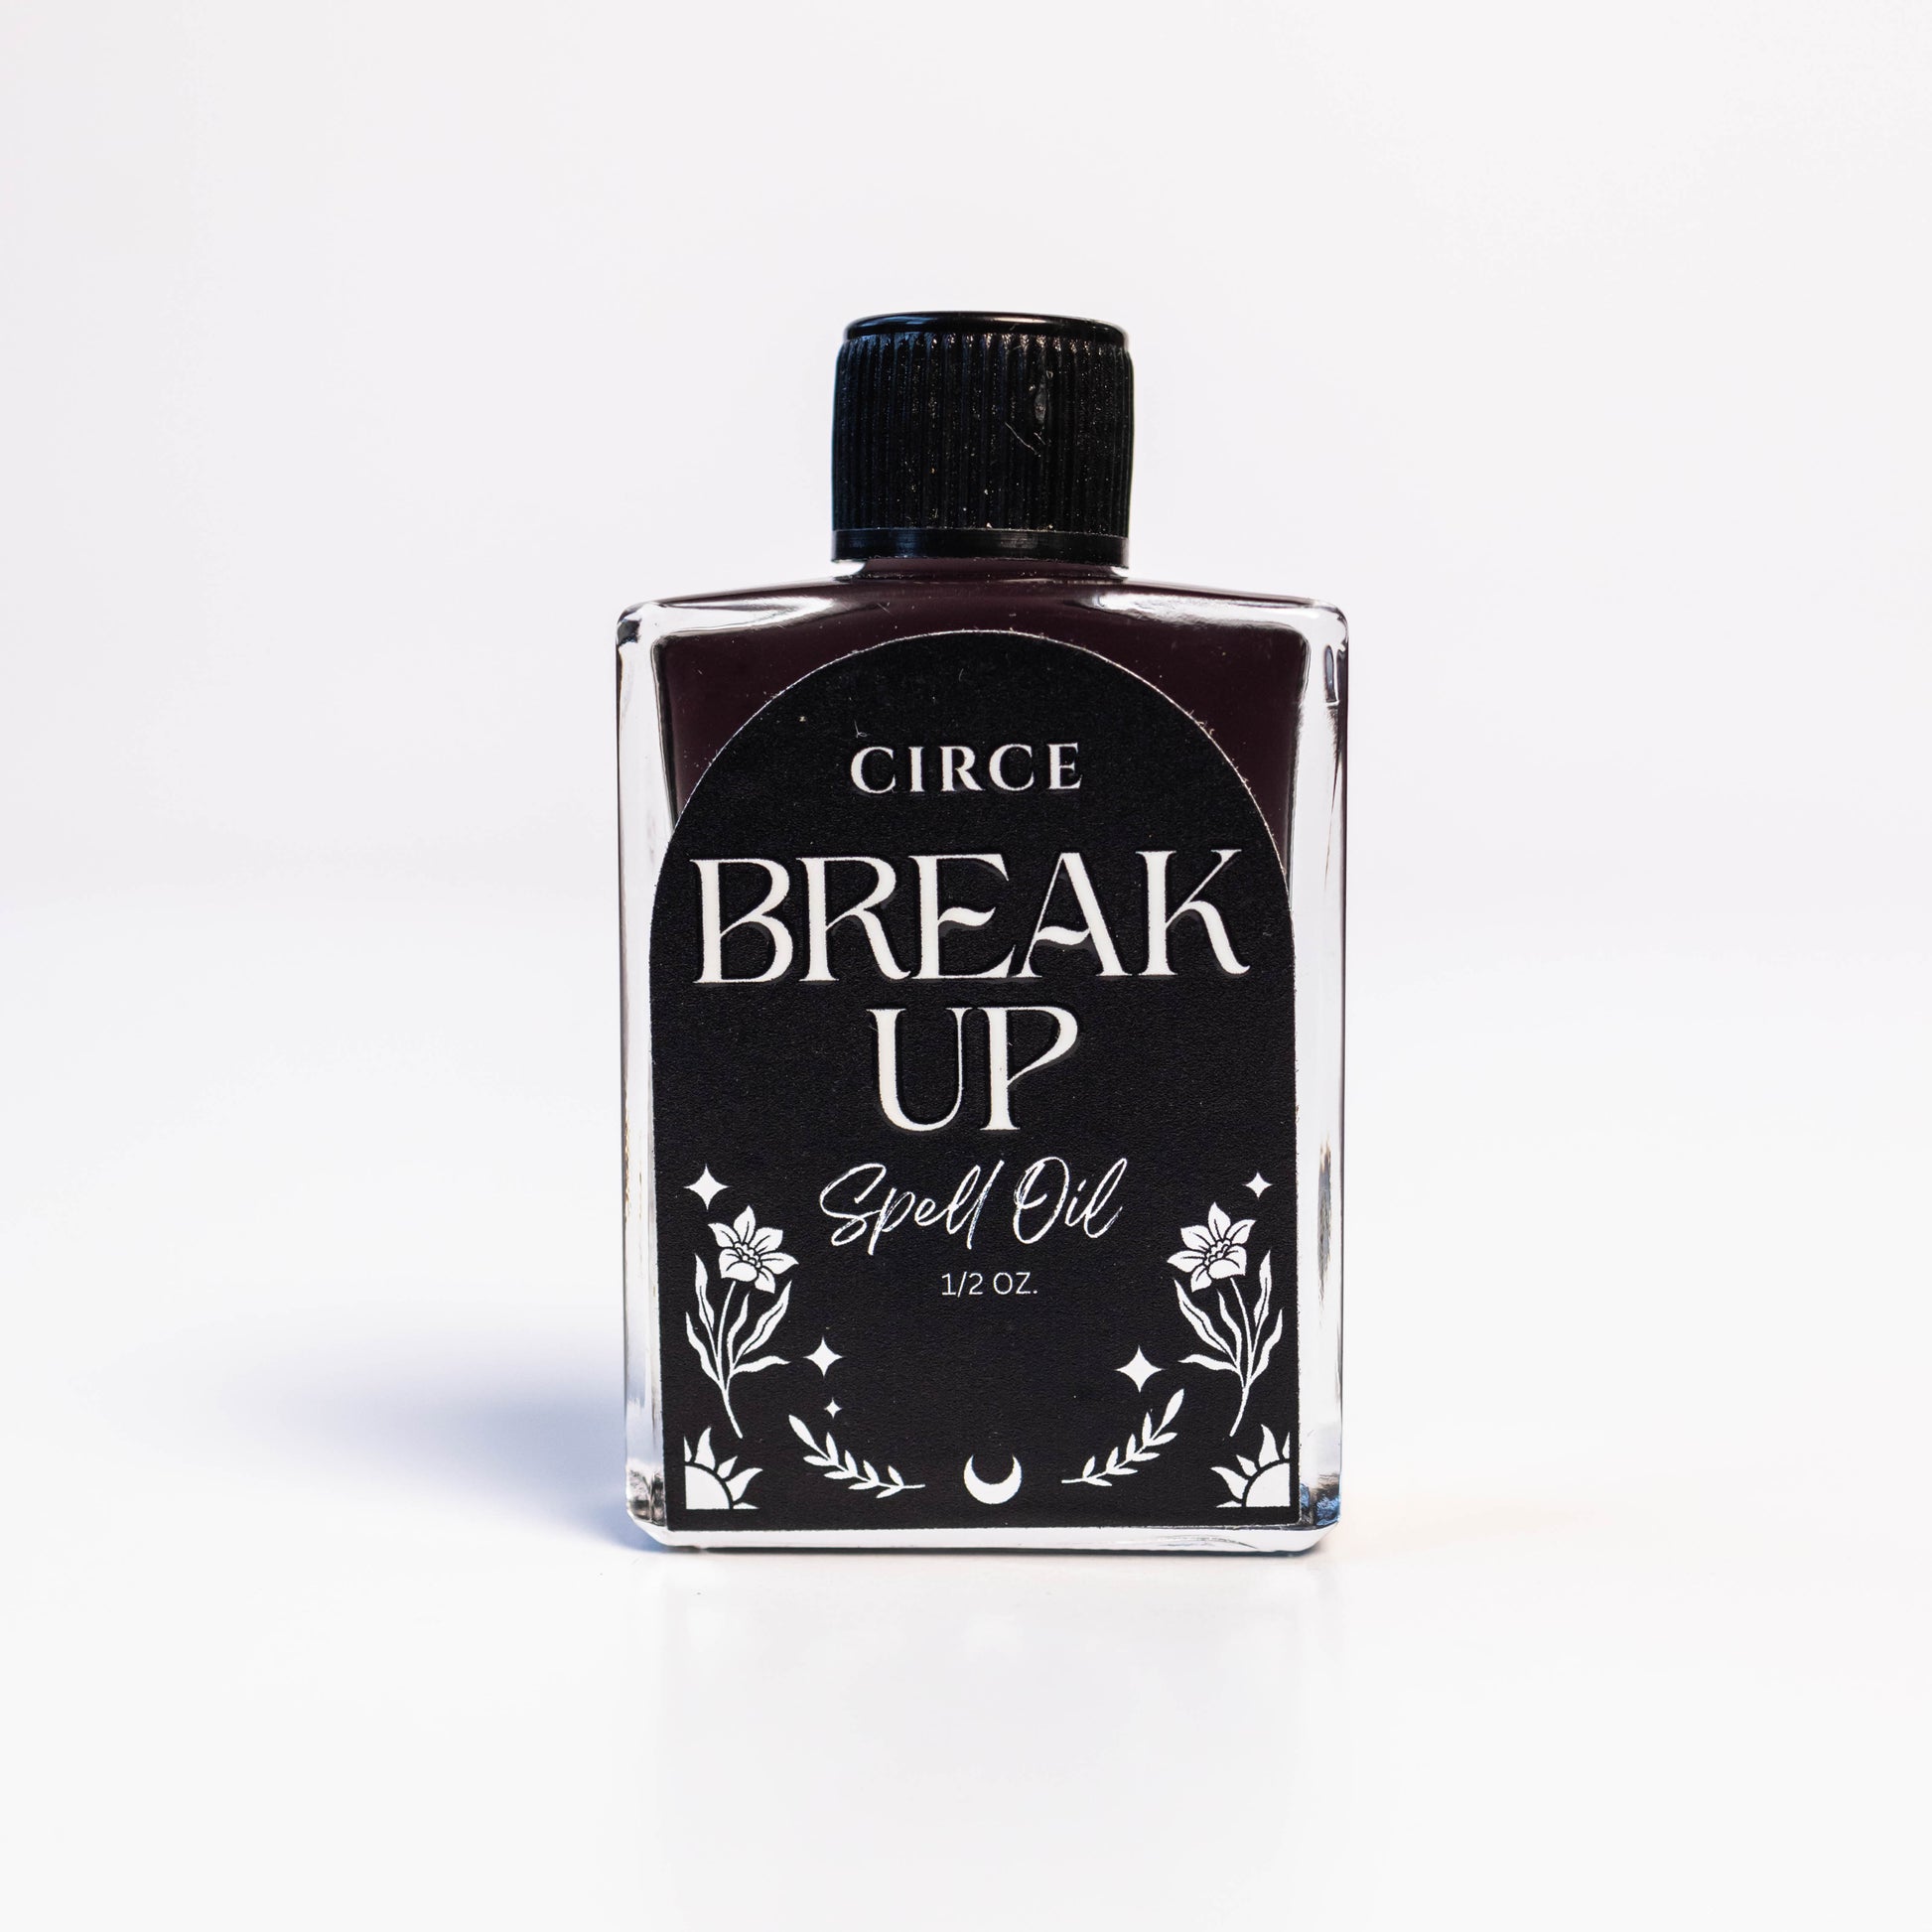 CIRCE Break Up Spell Oil 1/2 oz. - Oil Spell Oil from CirceBoutique